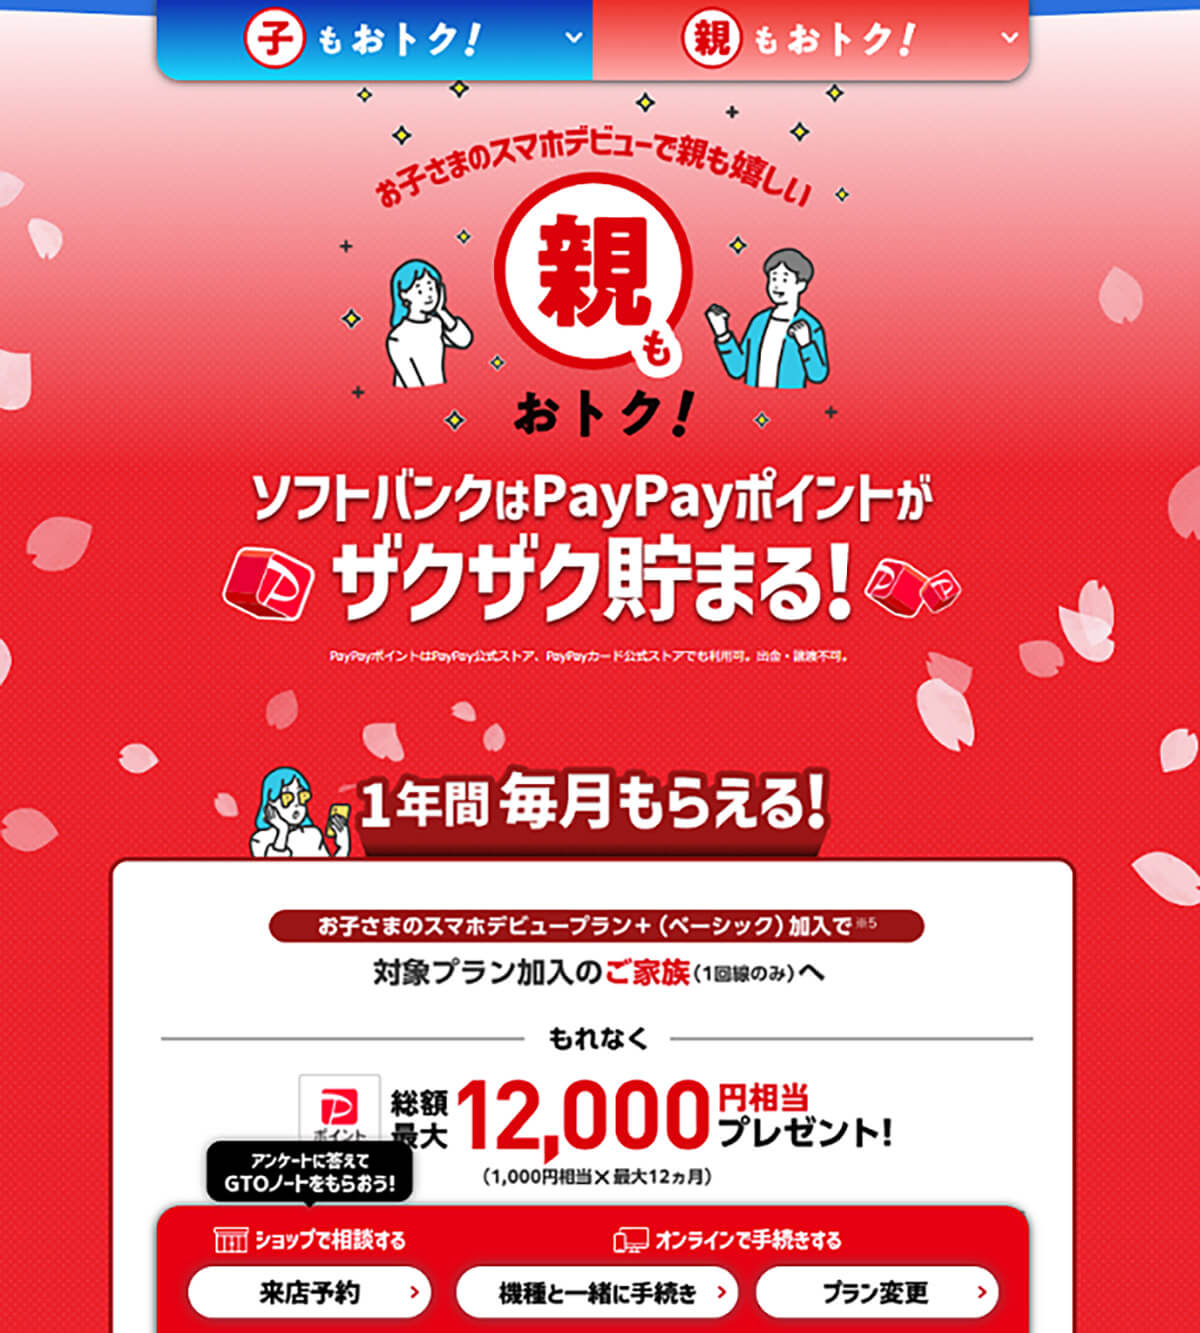 【3】PayPayポイント還元を受ける1